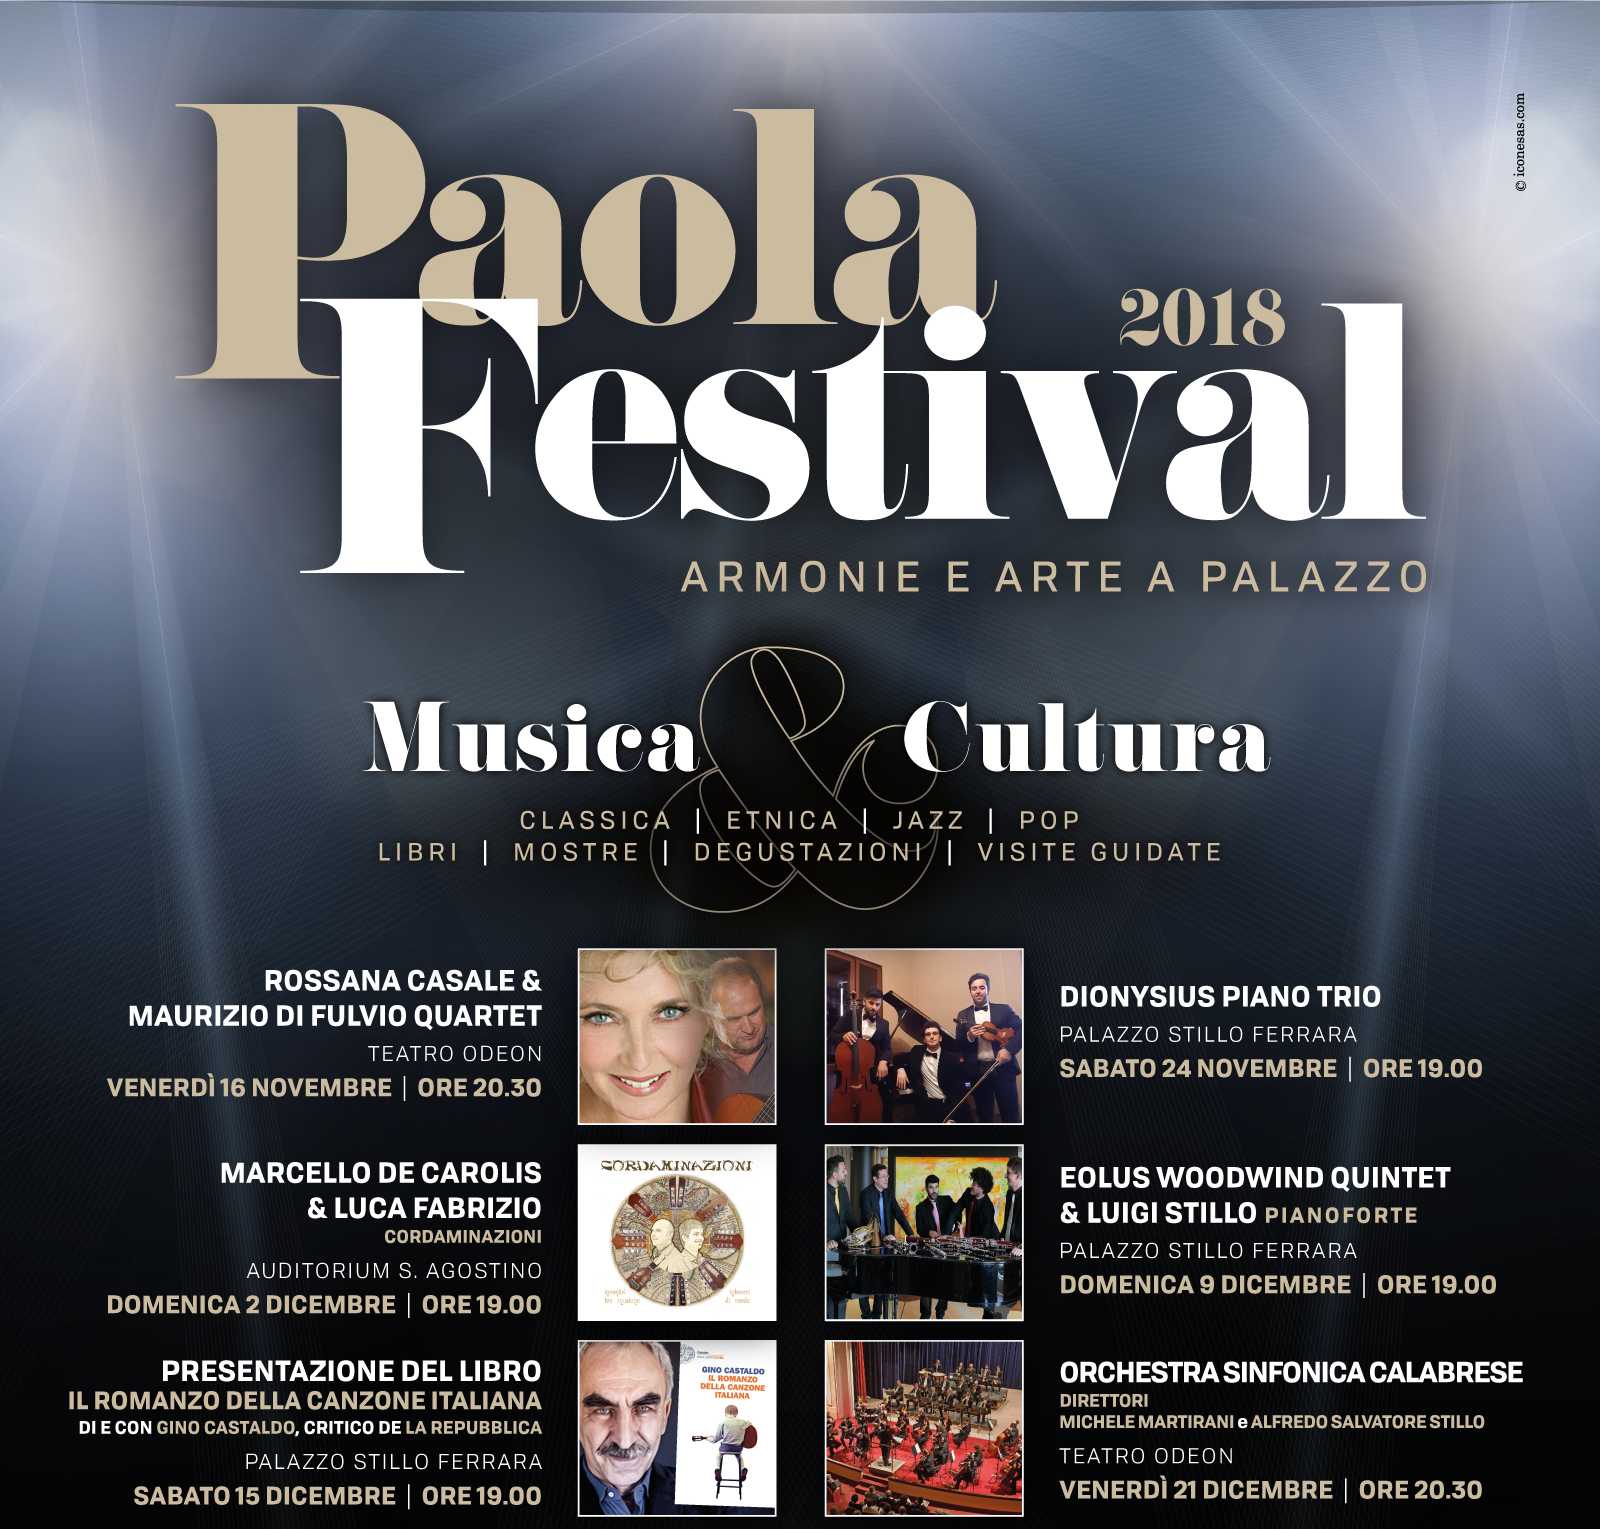 Successo per il concerto inaugurale del Paola festival 2018 affidato alla splendida Rossana Casale